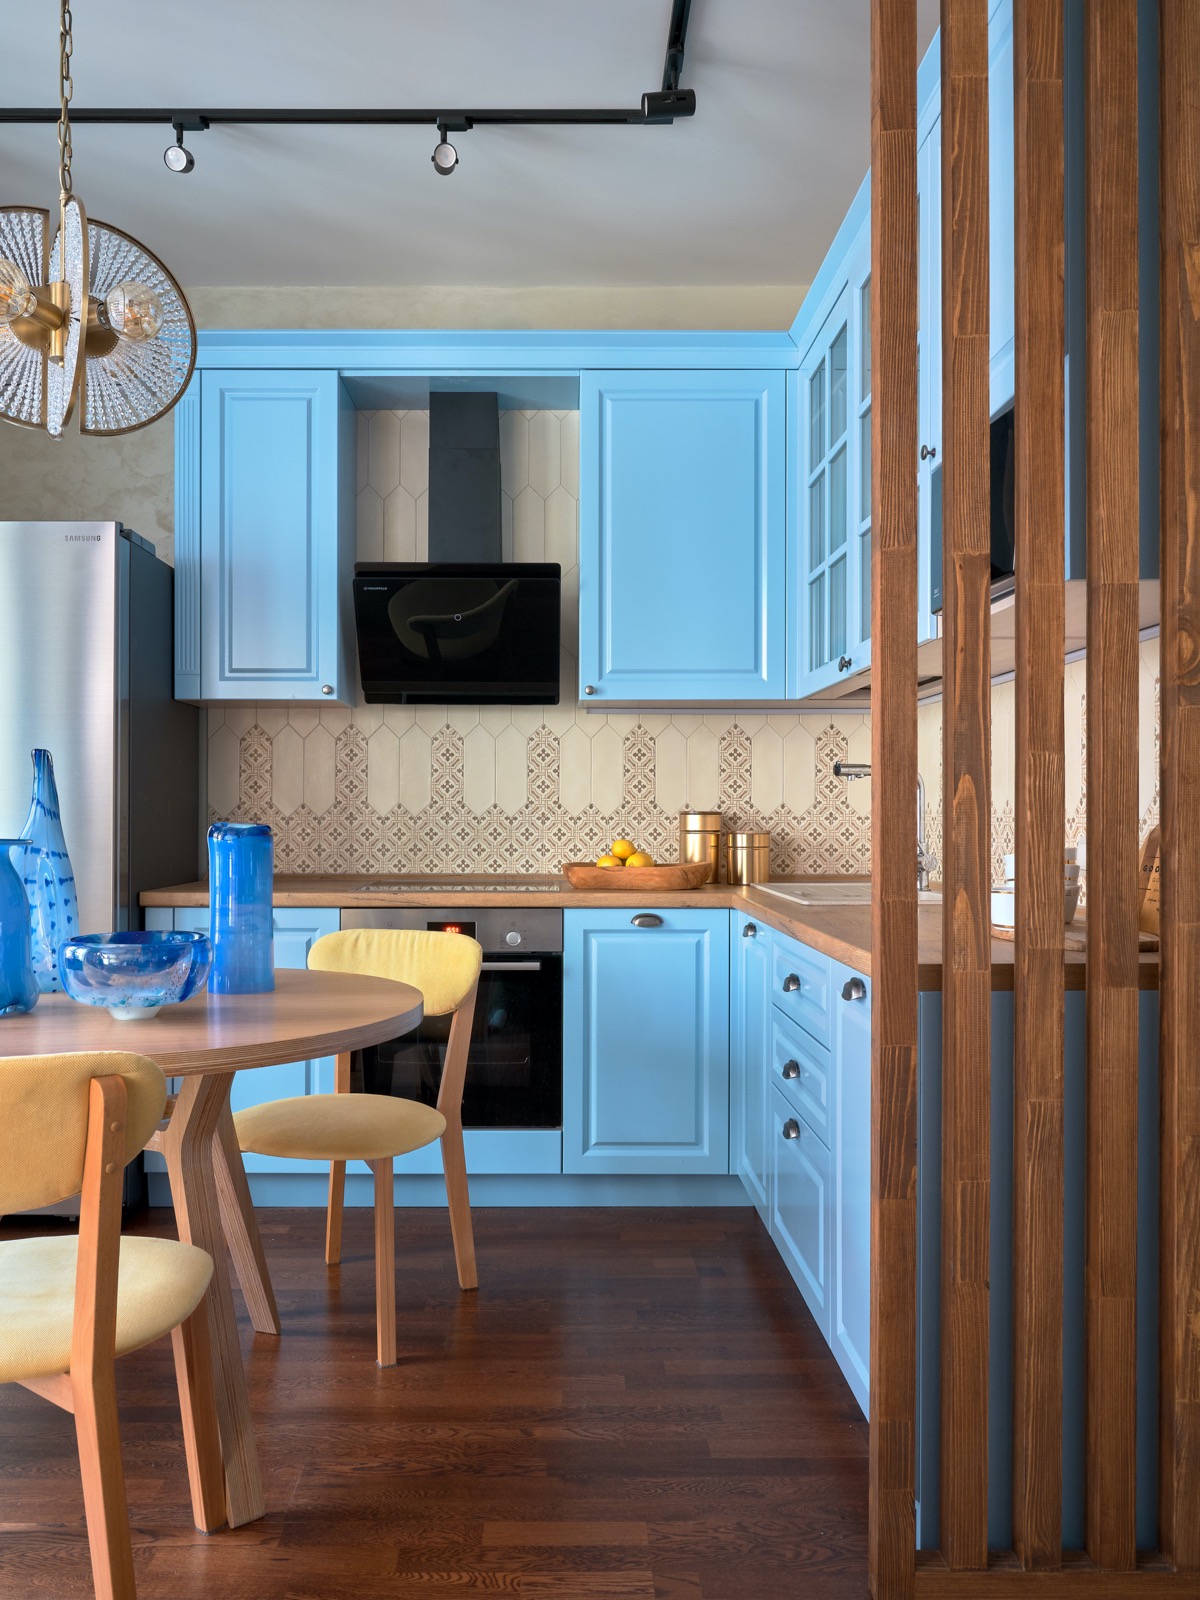 Bluecoloured kitchen